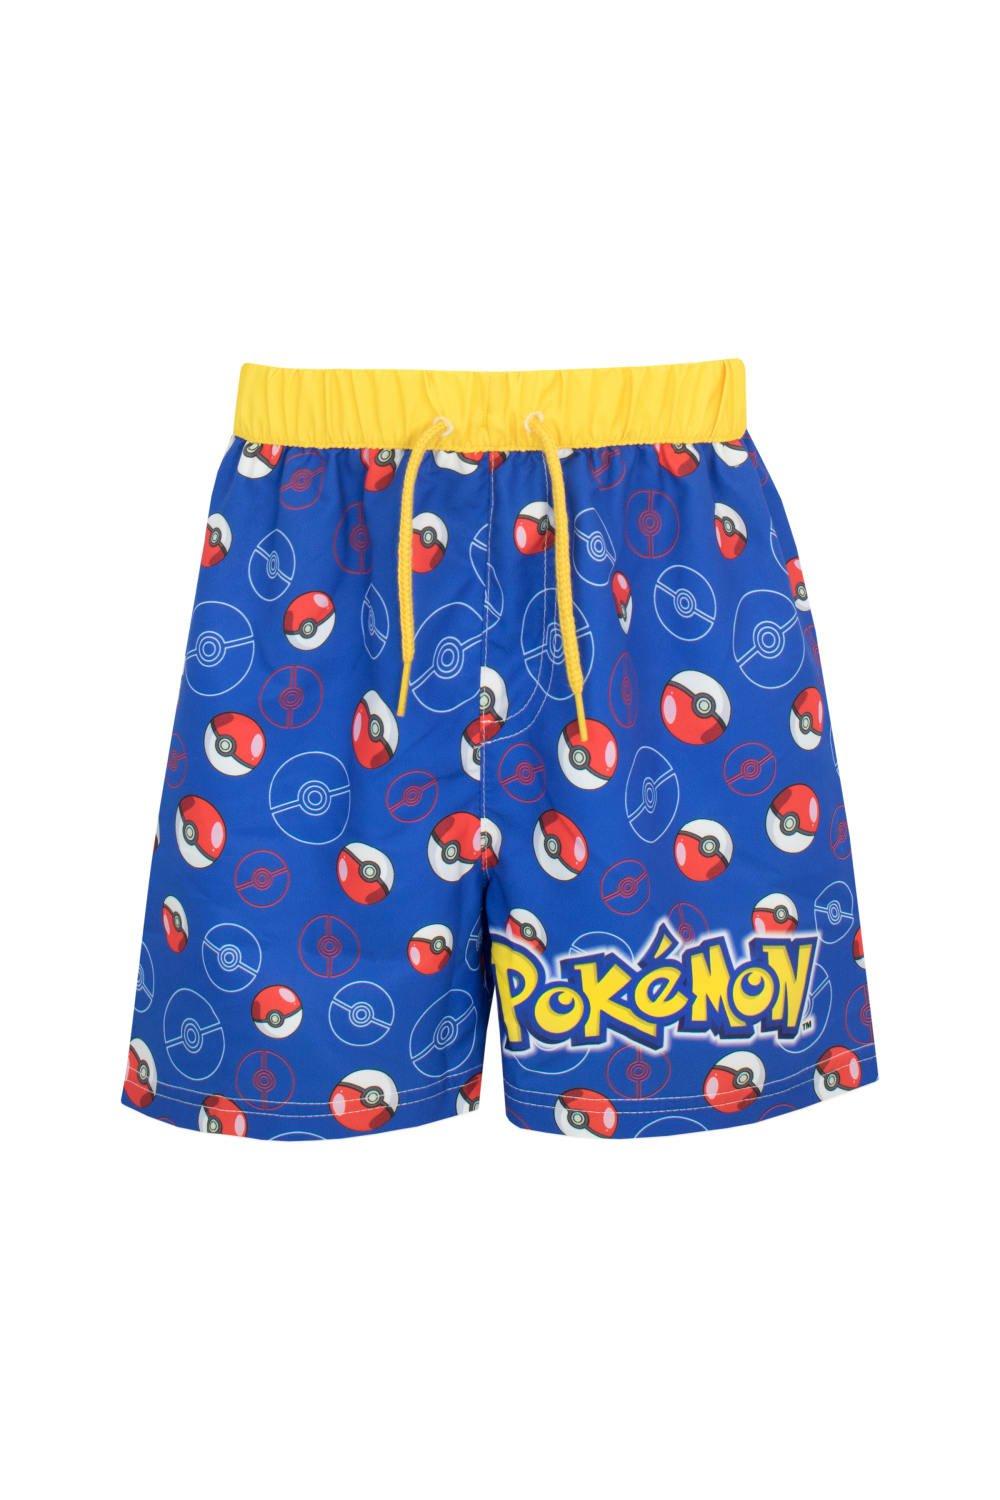 Pokeball Swim Shorts